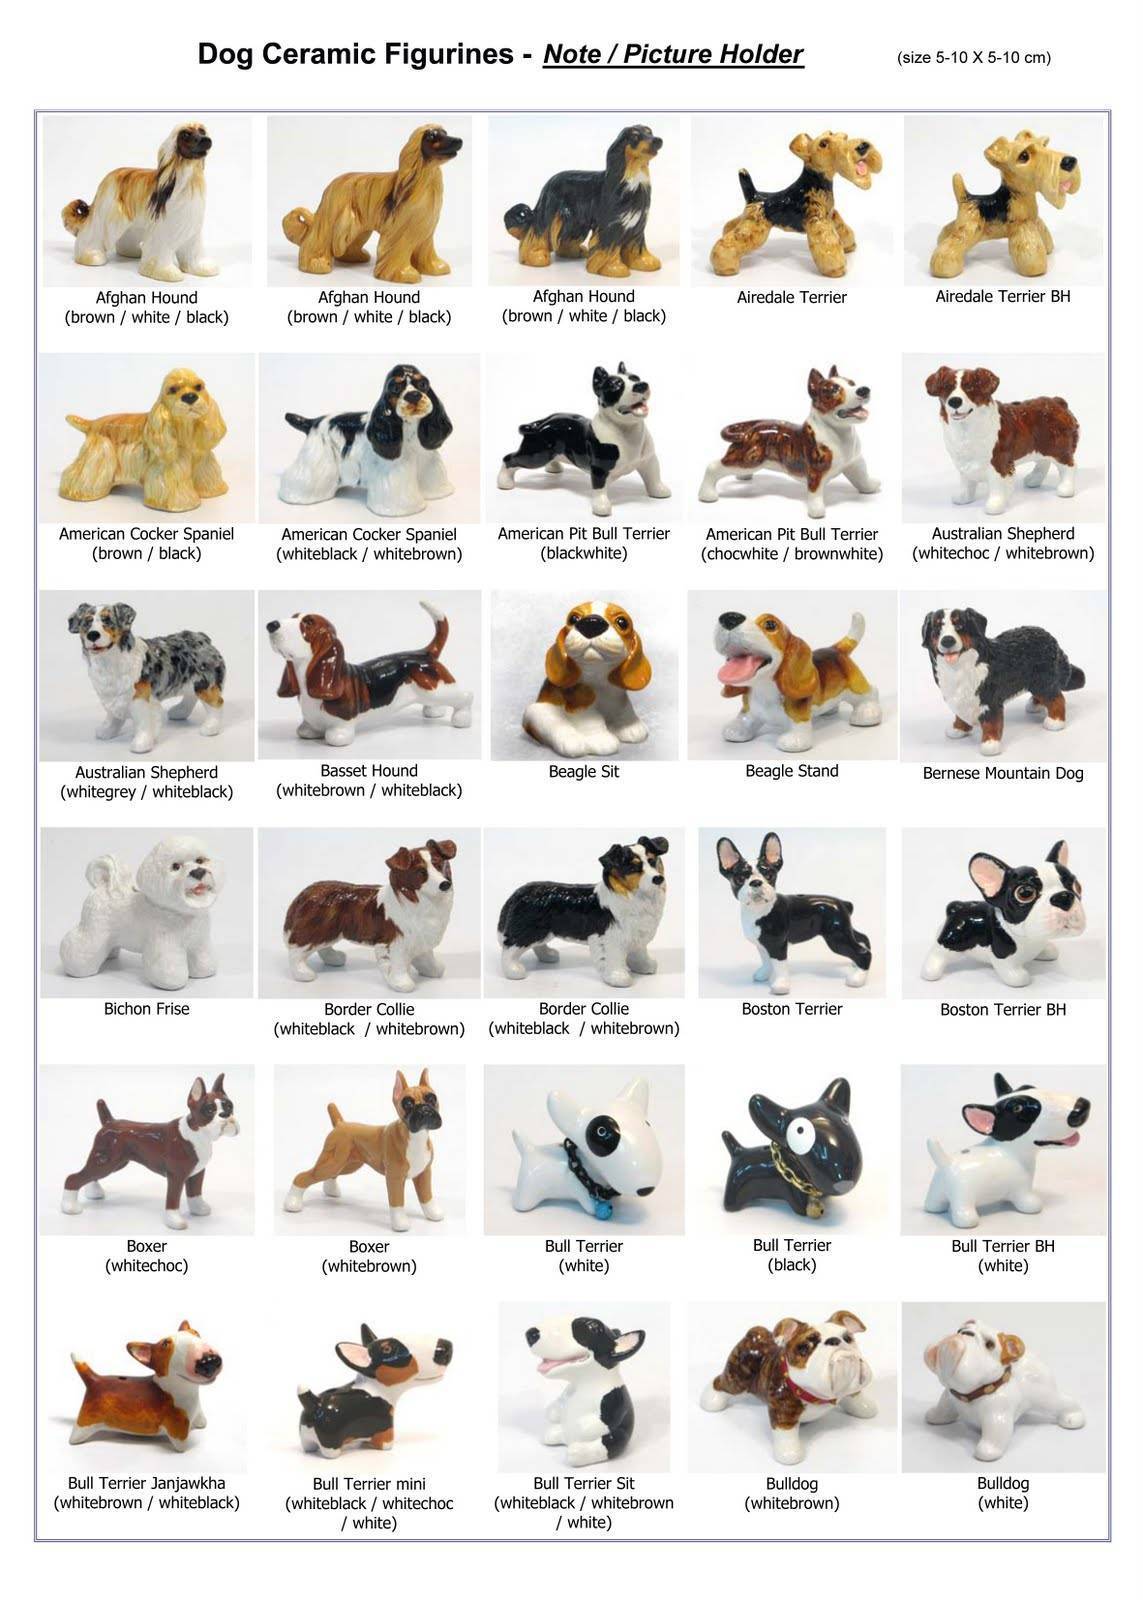 Топ 10 больших пород собак с фотографиями и названиями
топ 10 больших пород собак с фотографиями и названиями